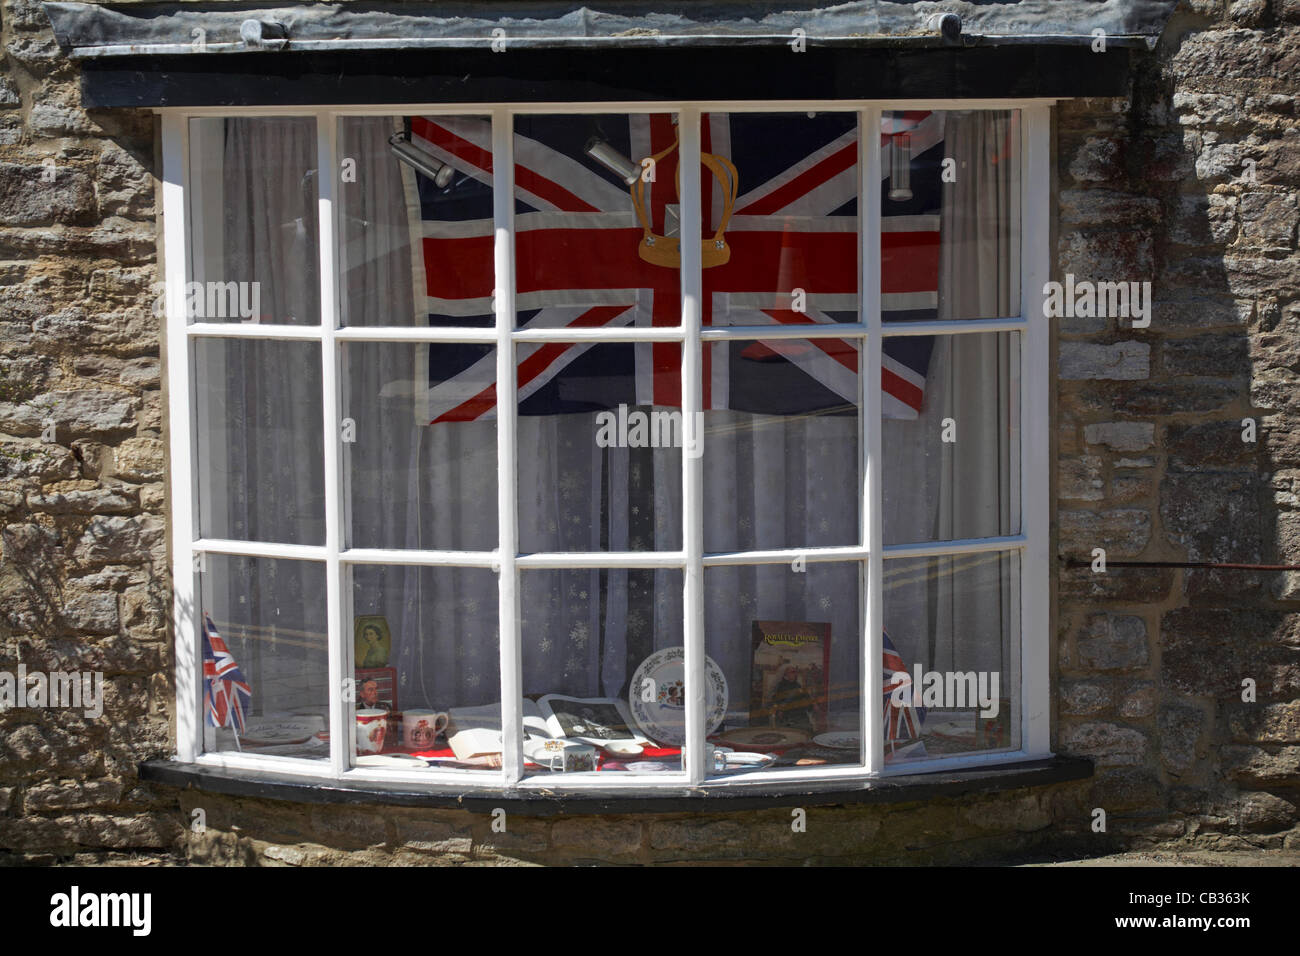 La préparation de la 60e Queen's Diamond Jubilee à Corfe Castle, Dorset UK - royal memorabilia et Union Jack flag dans la fenêtre Banque D'Images